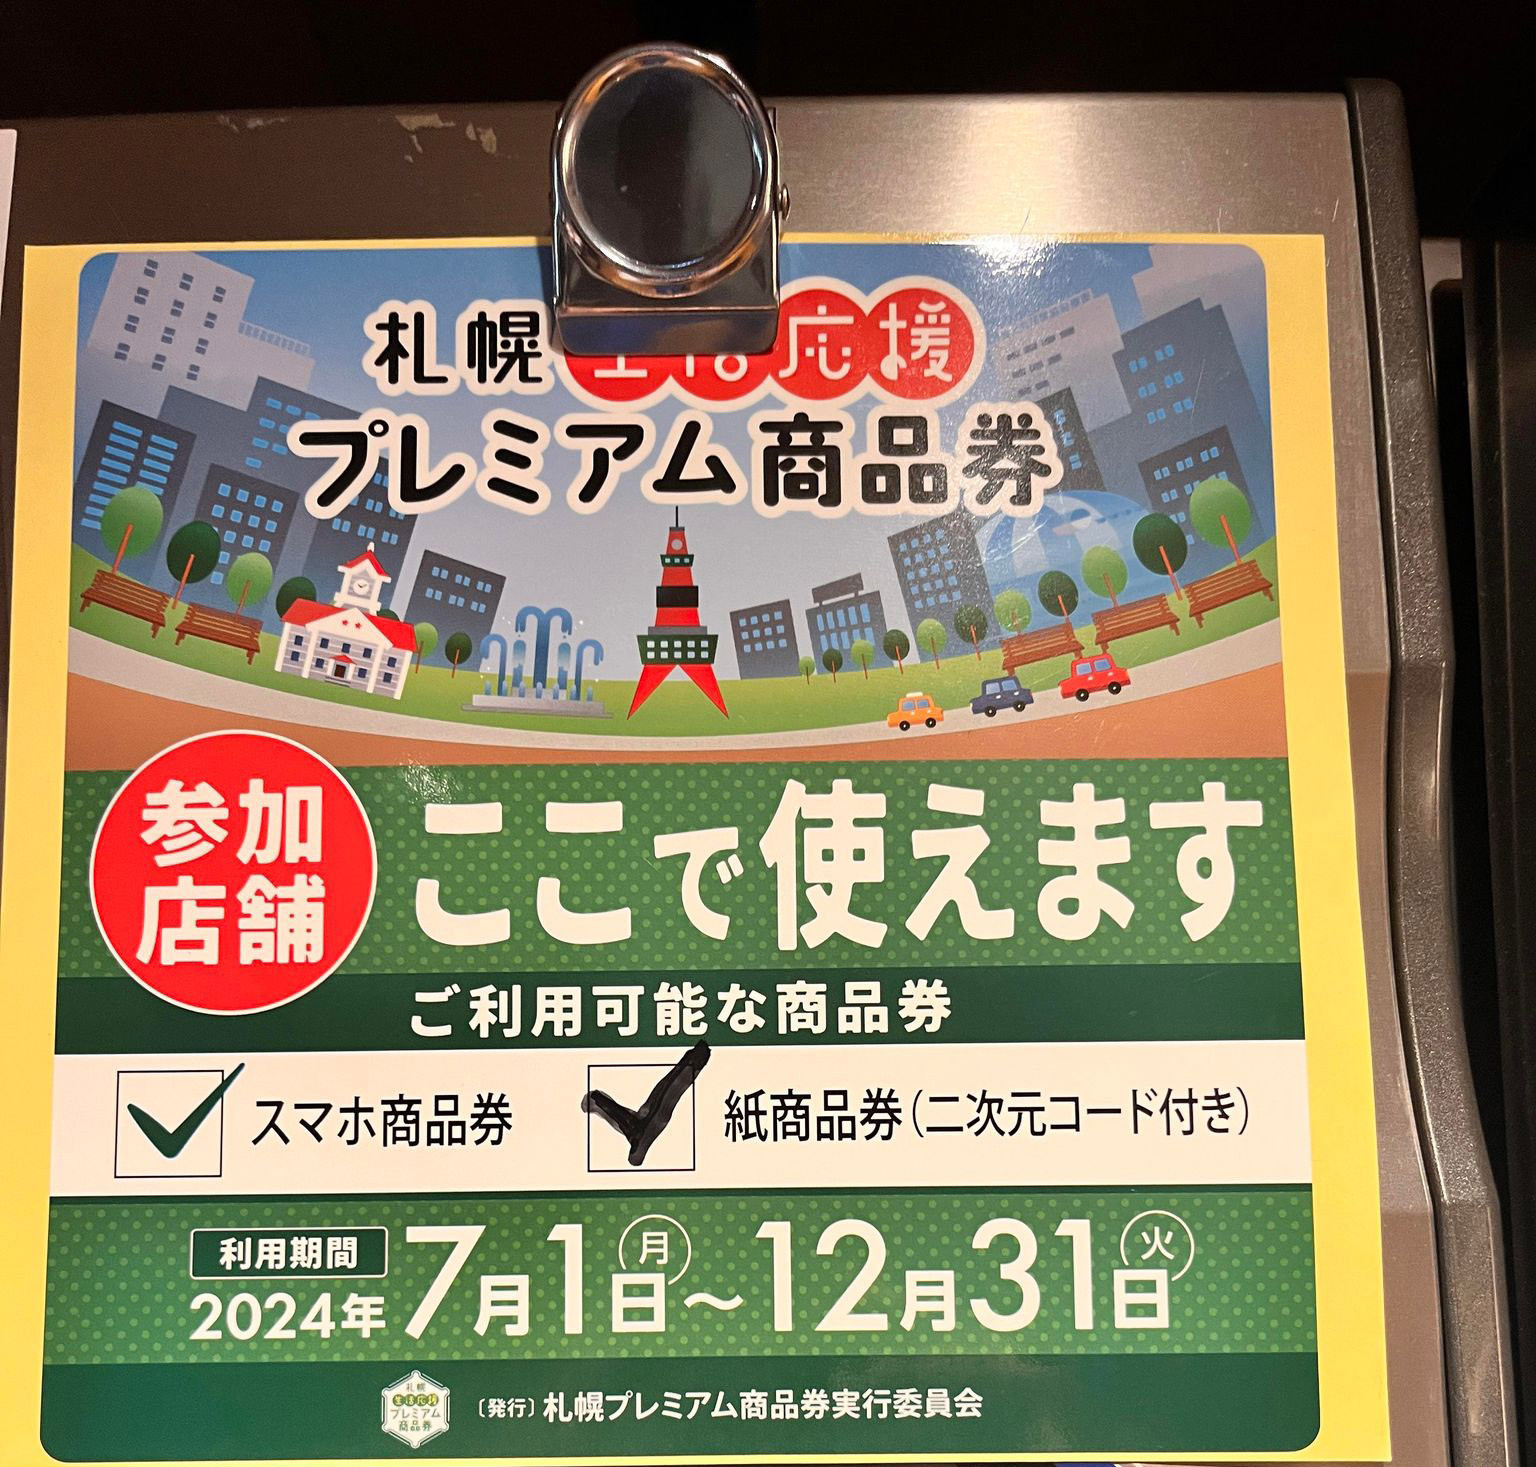 ●札幌生活応援プレミアム商品券が使えます。